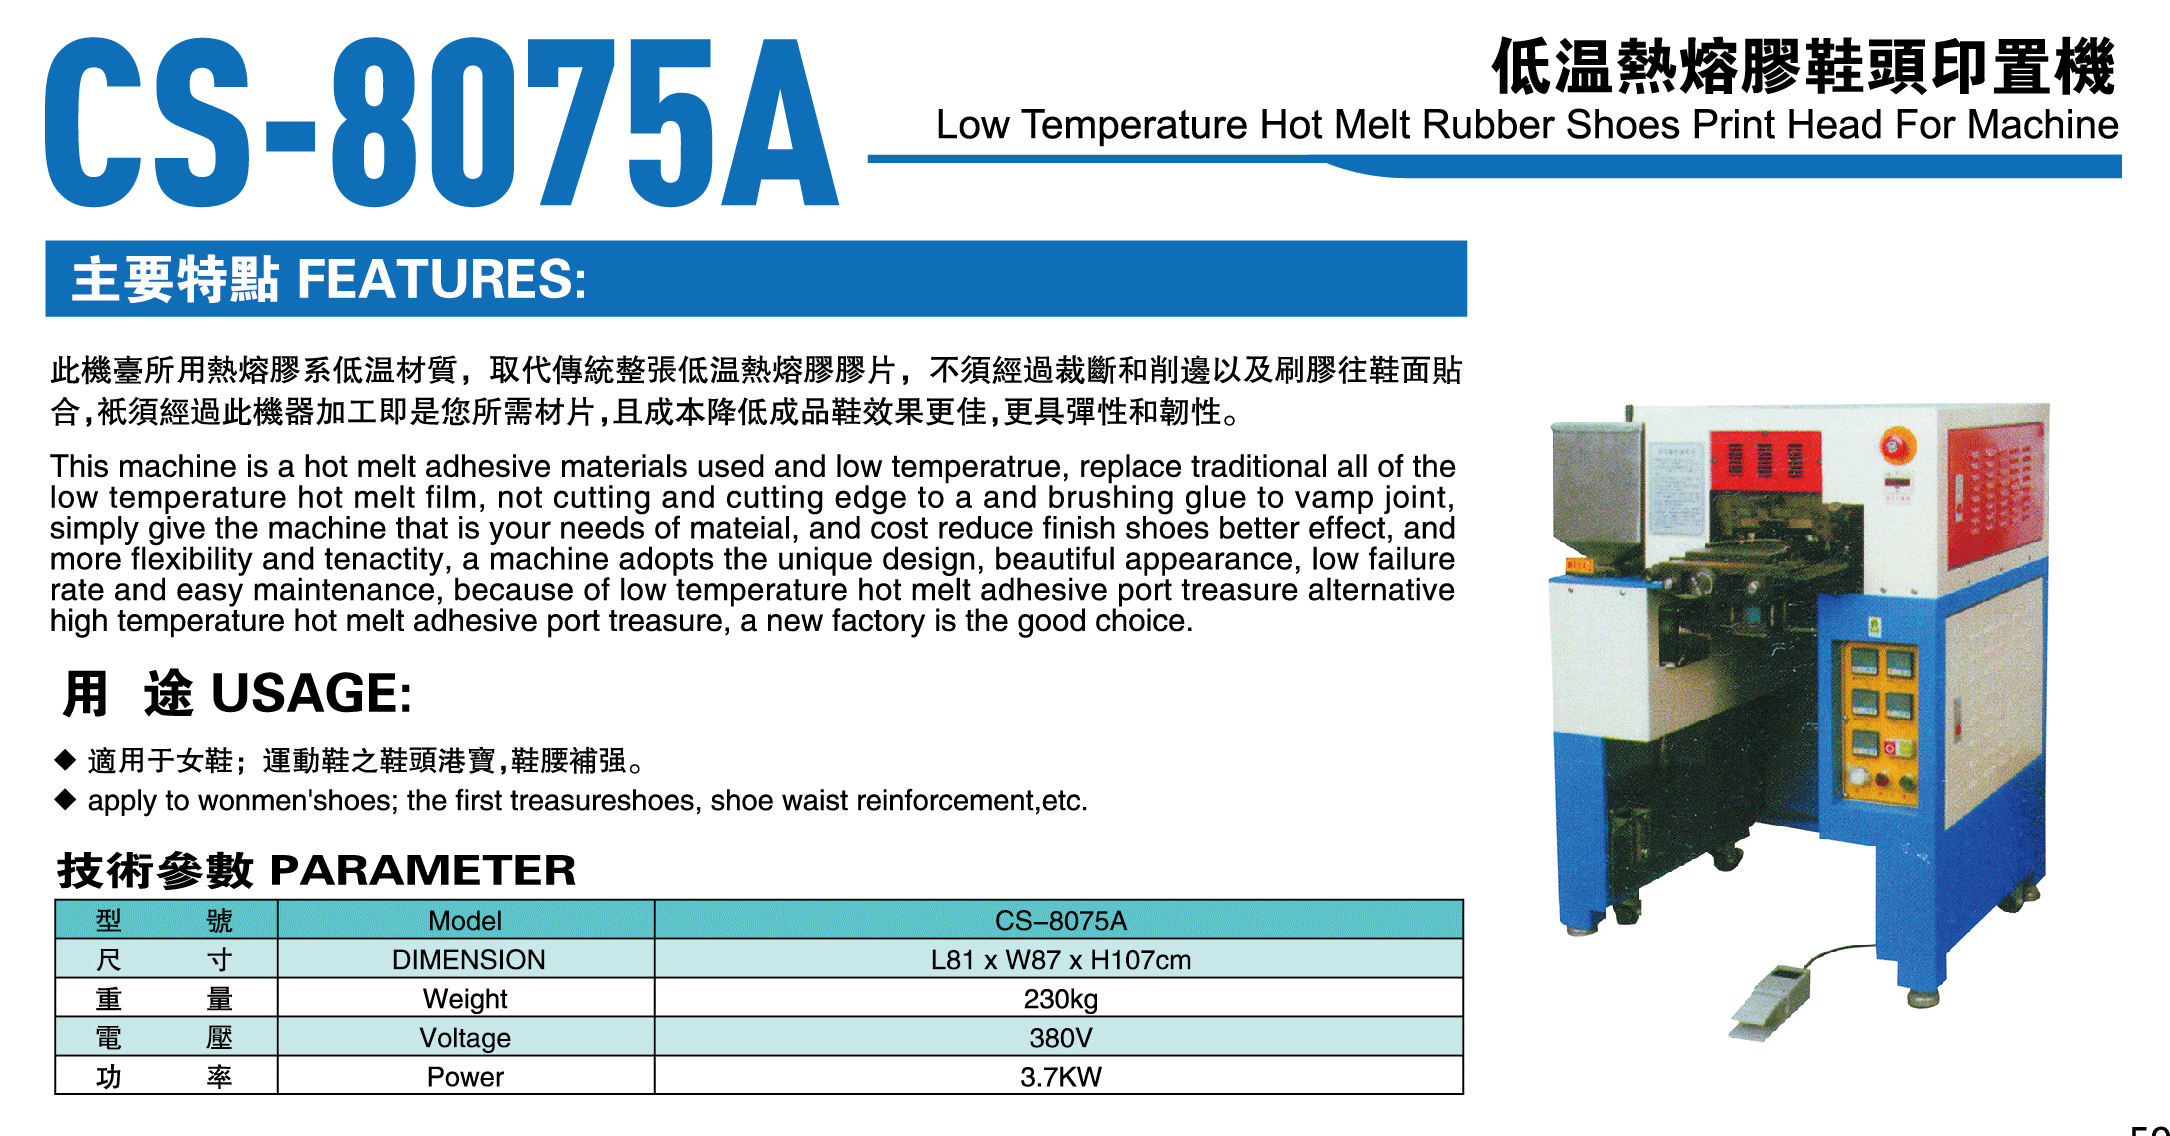 CS-8075A